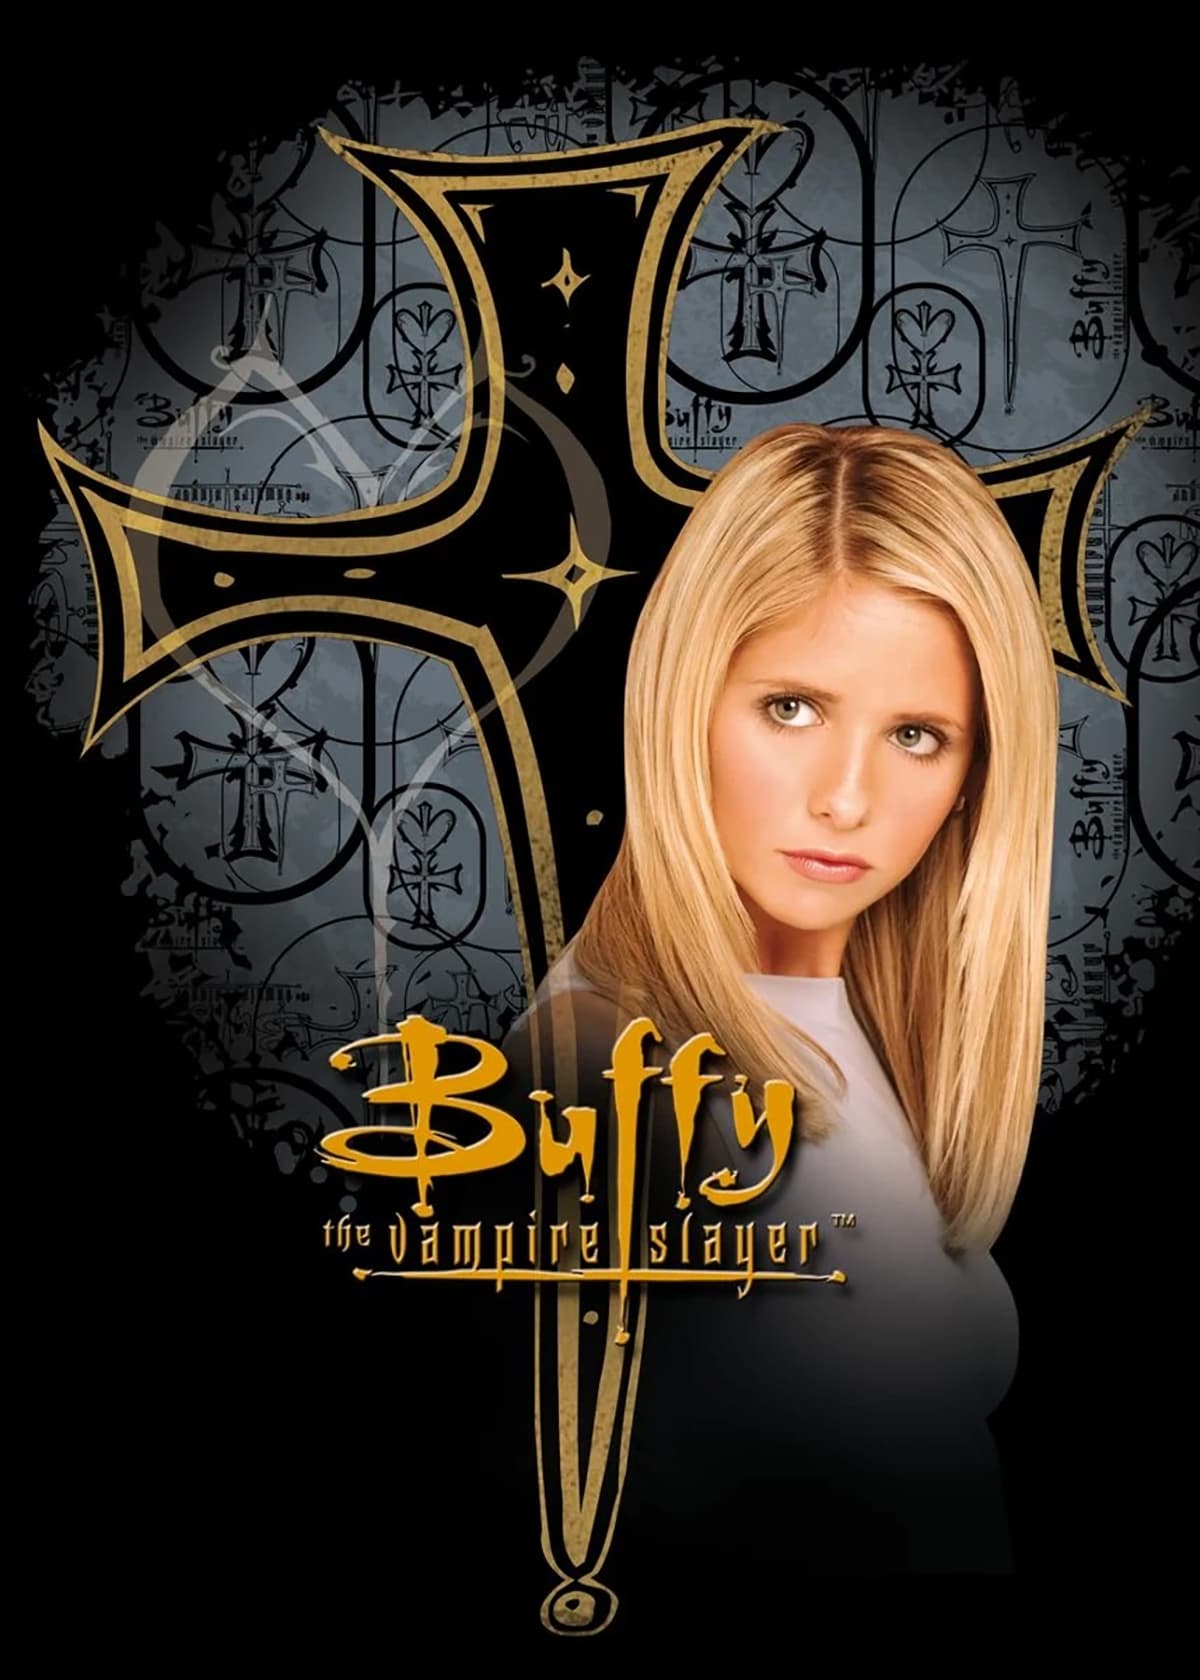 Plakát pro film “Buffy, přemožitelka upírů”